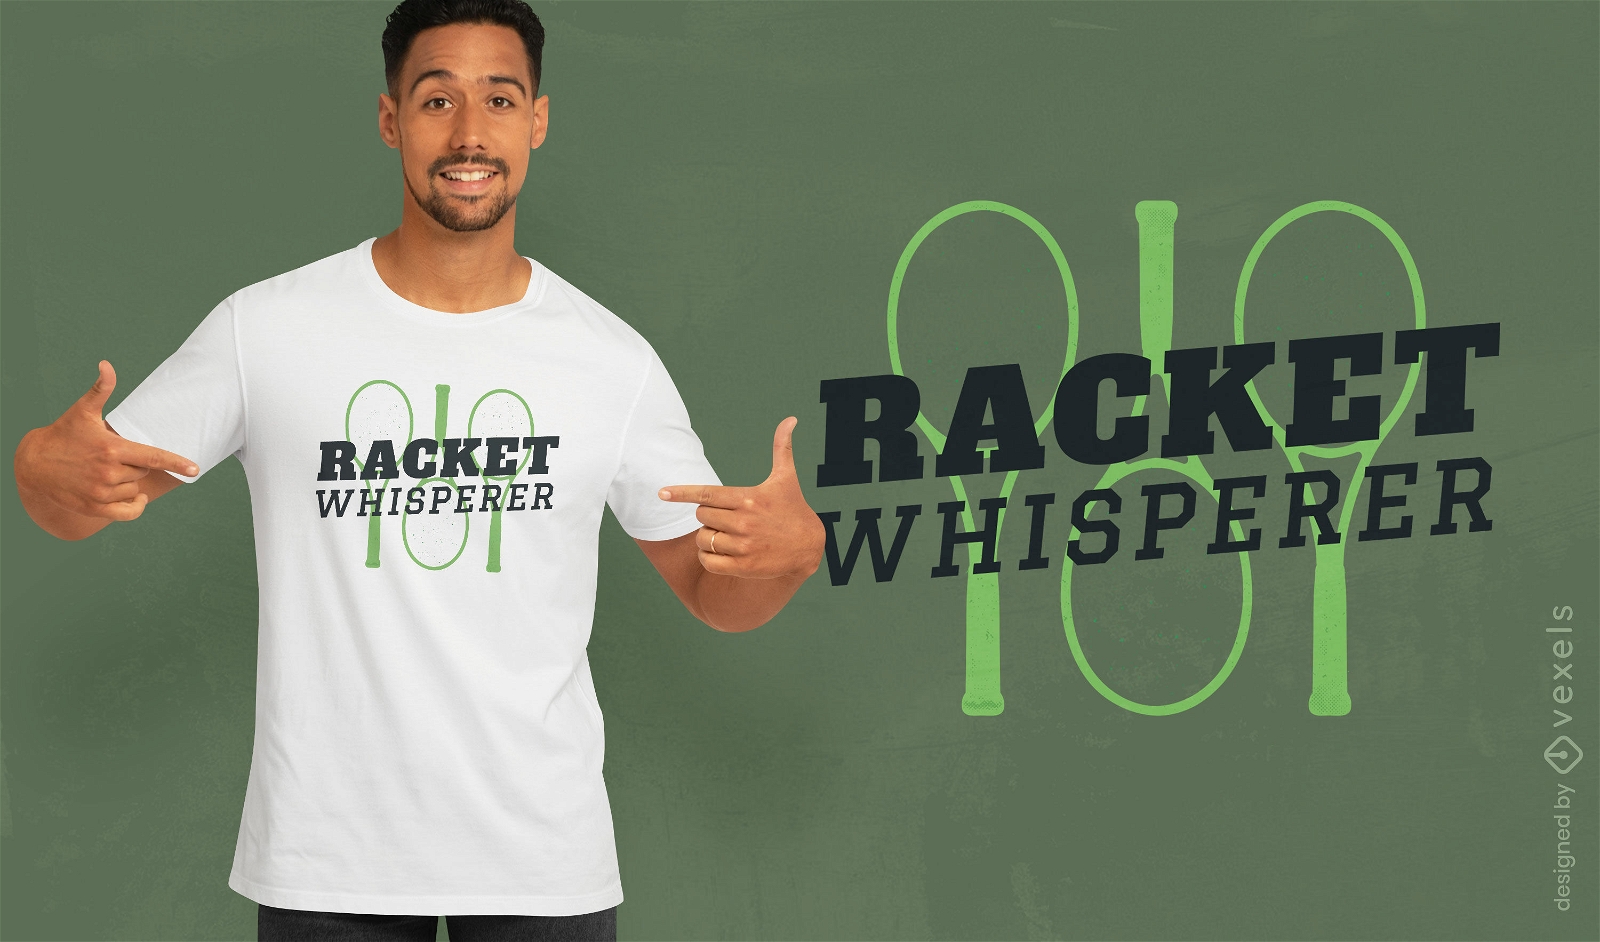 Racket whisperer t-shirt design